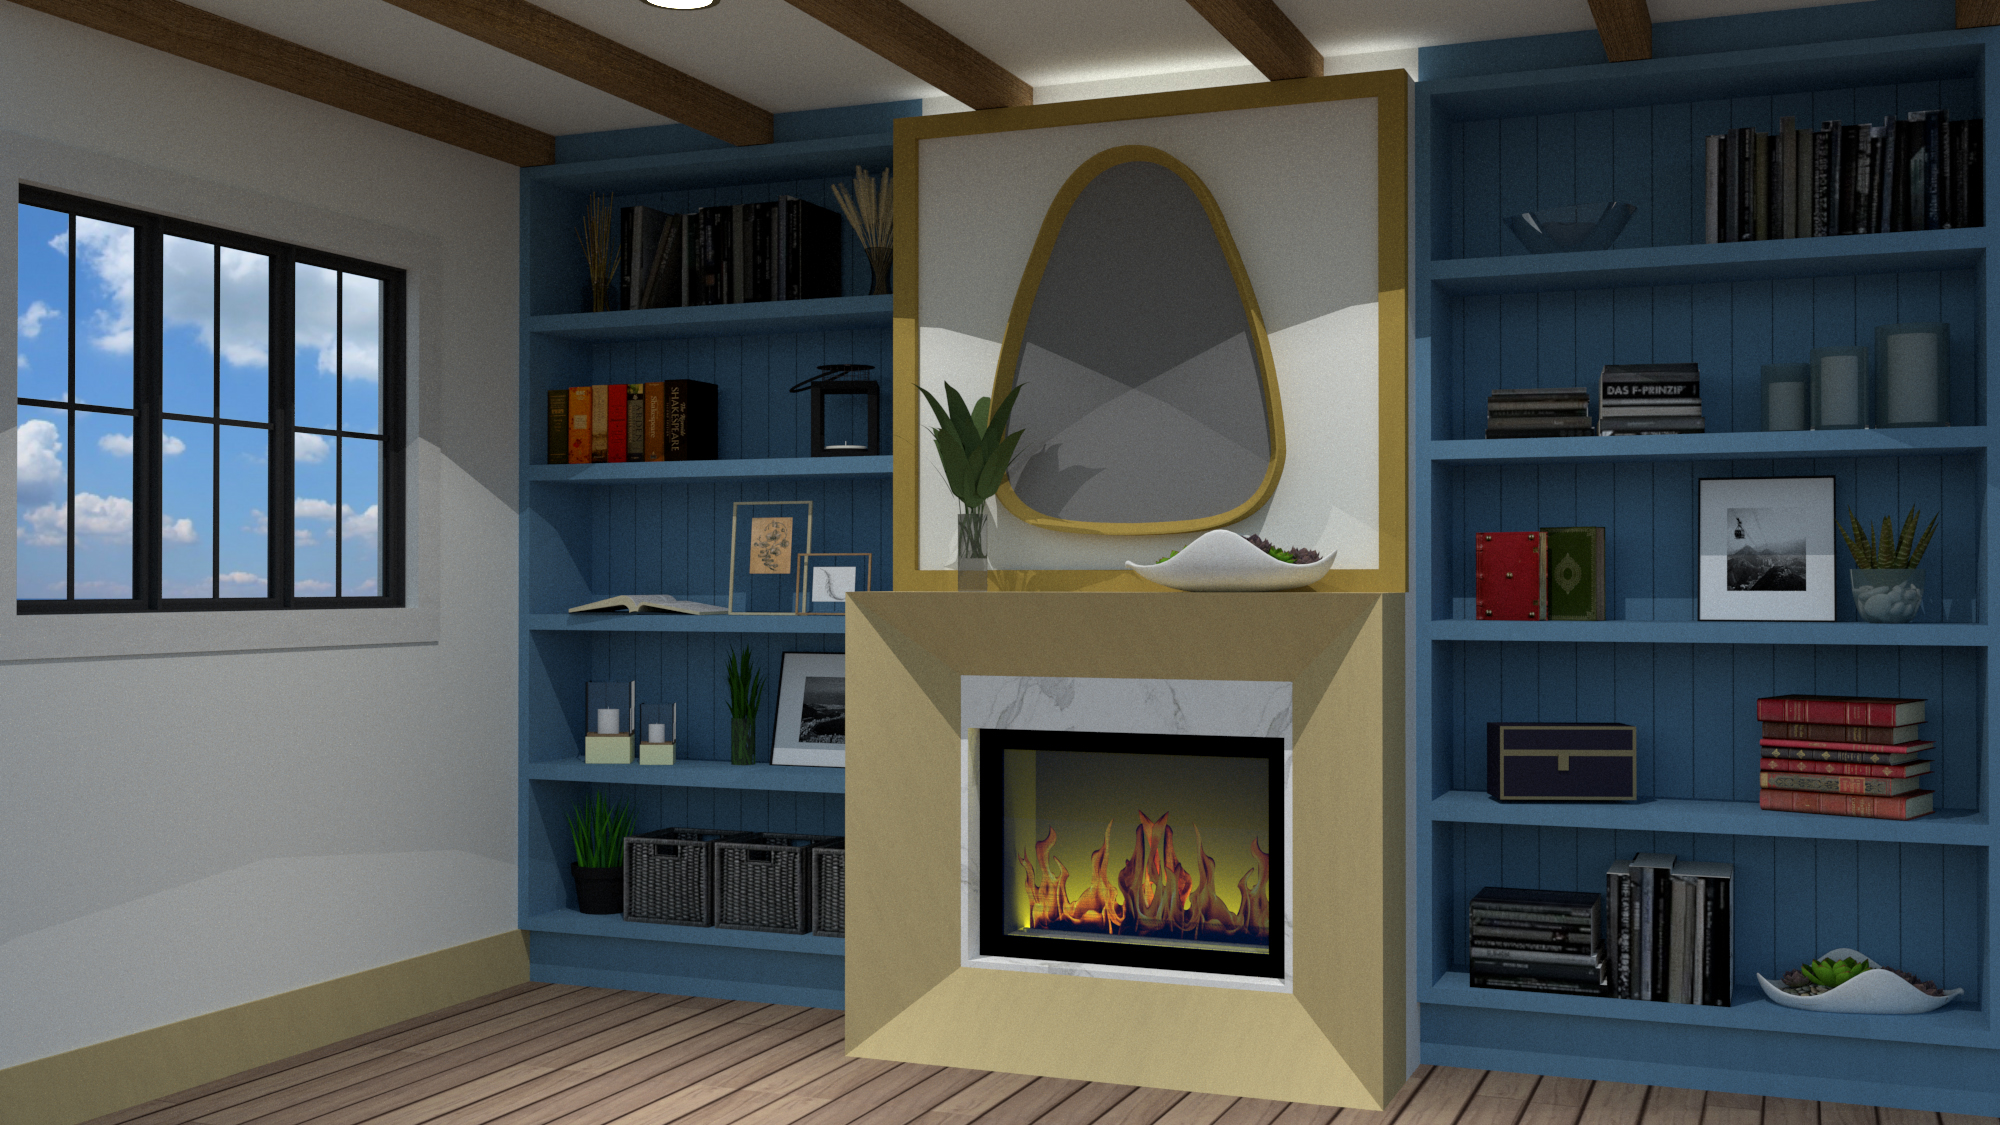 Scandinavian design basement fireplace, with natural an artificial lighting.